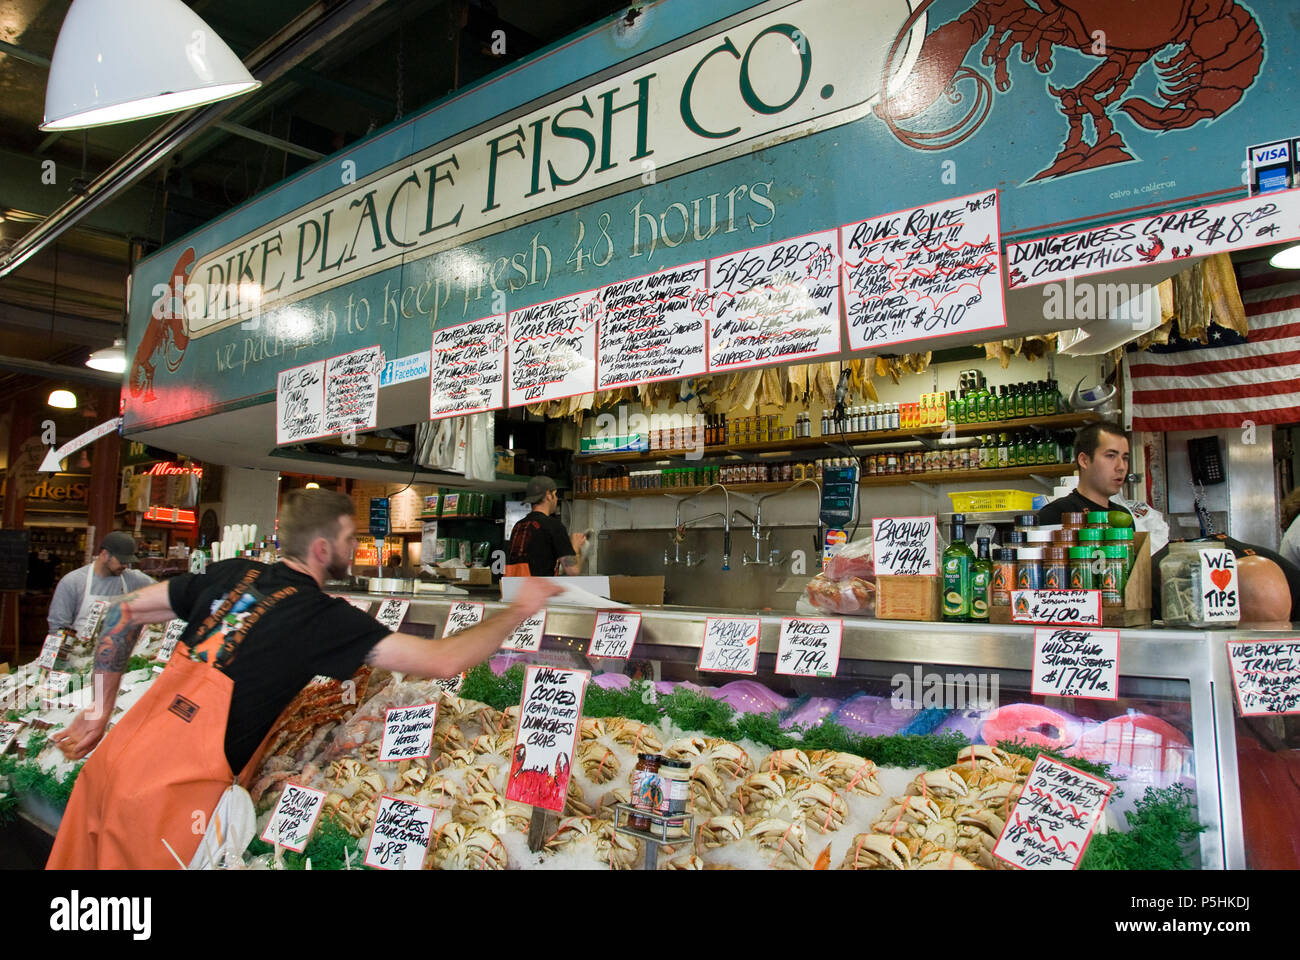 Der Pike Place Fish Co. verkauft frisches Fisch am Spieß öffentlichen Marktplatz, Seattle, Washington. Stockfoto